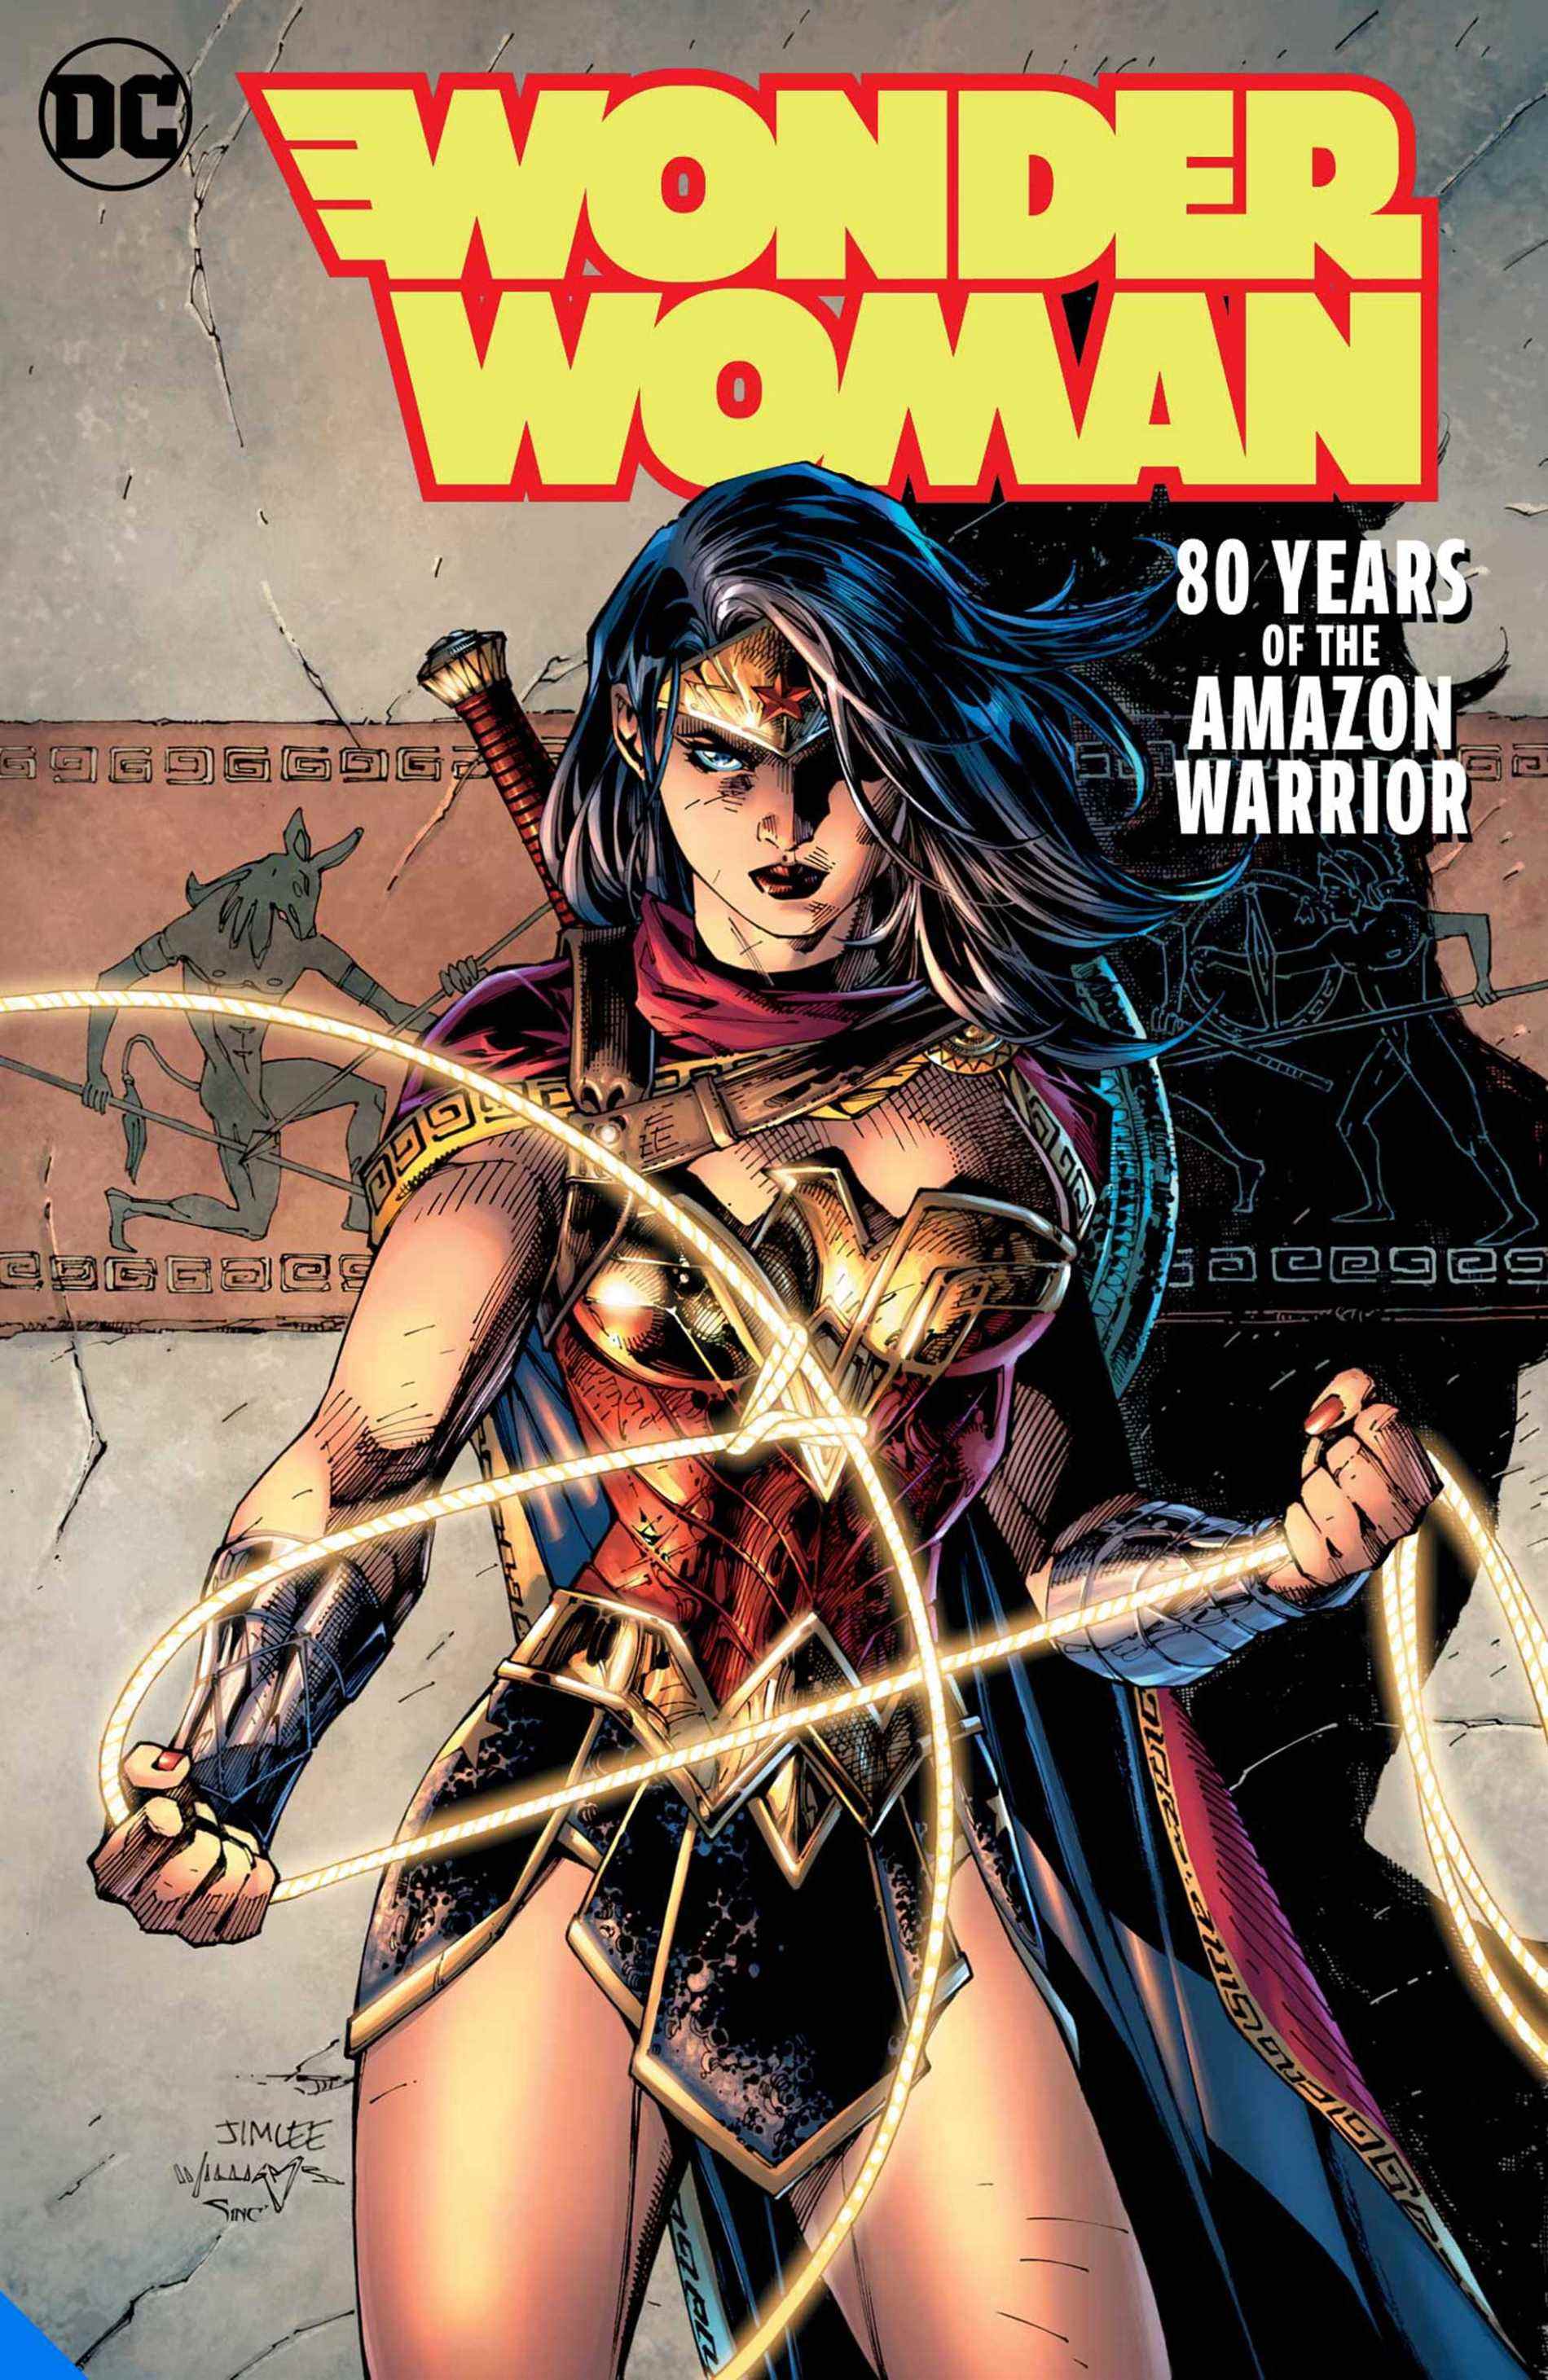 Titre du 80e anniversaire de Wonder Woman